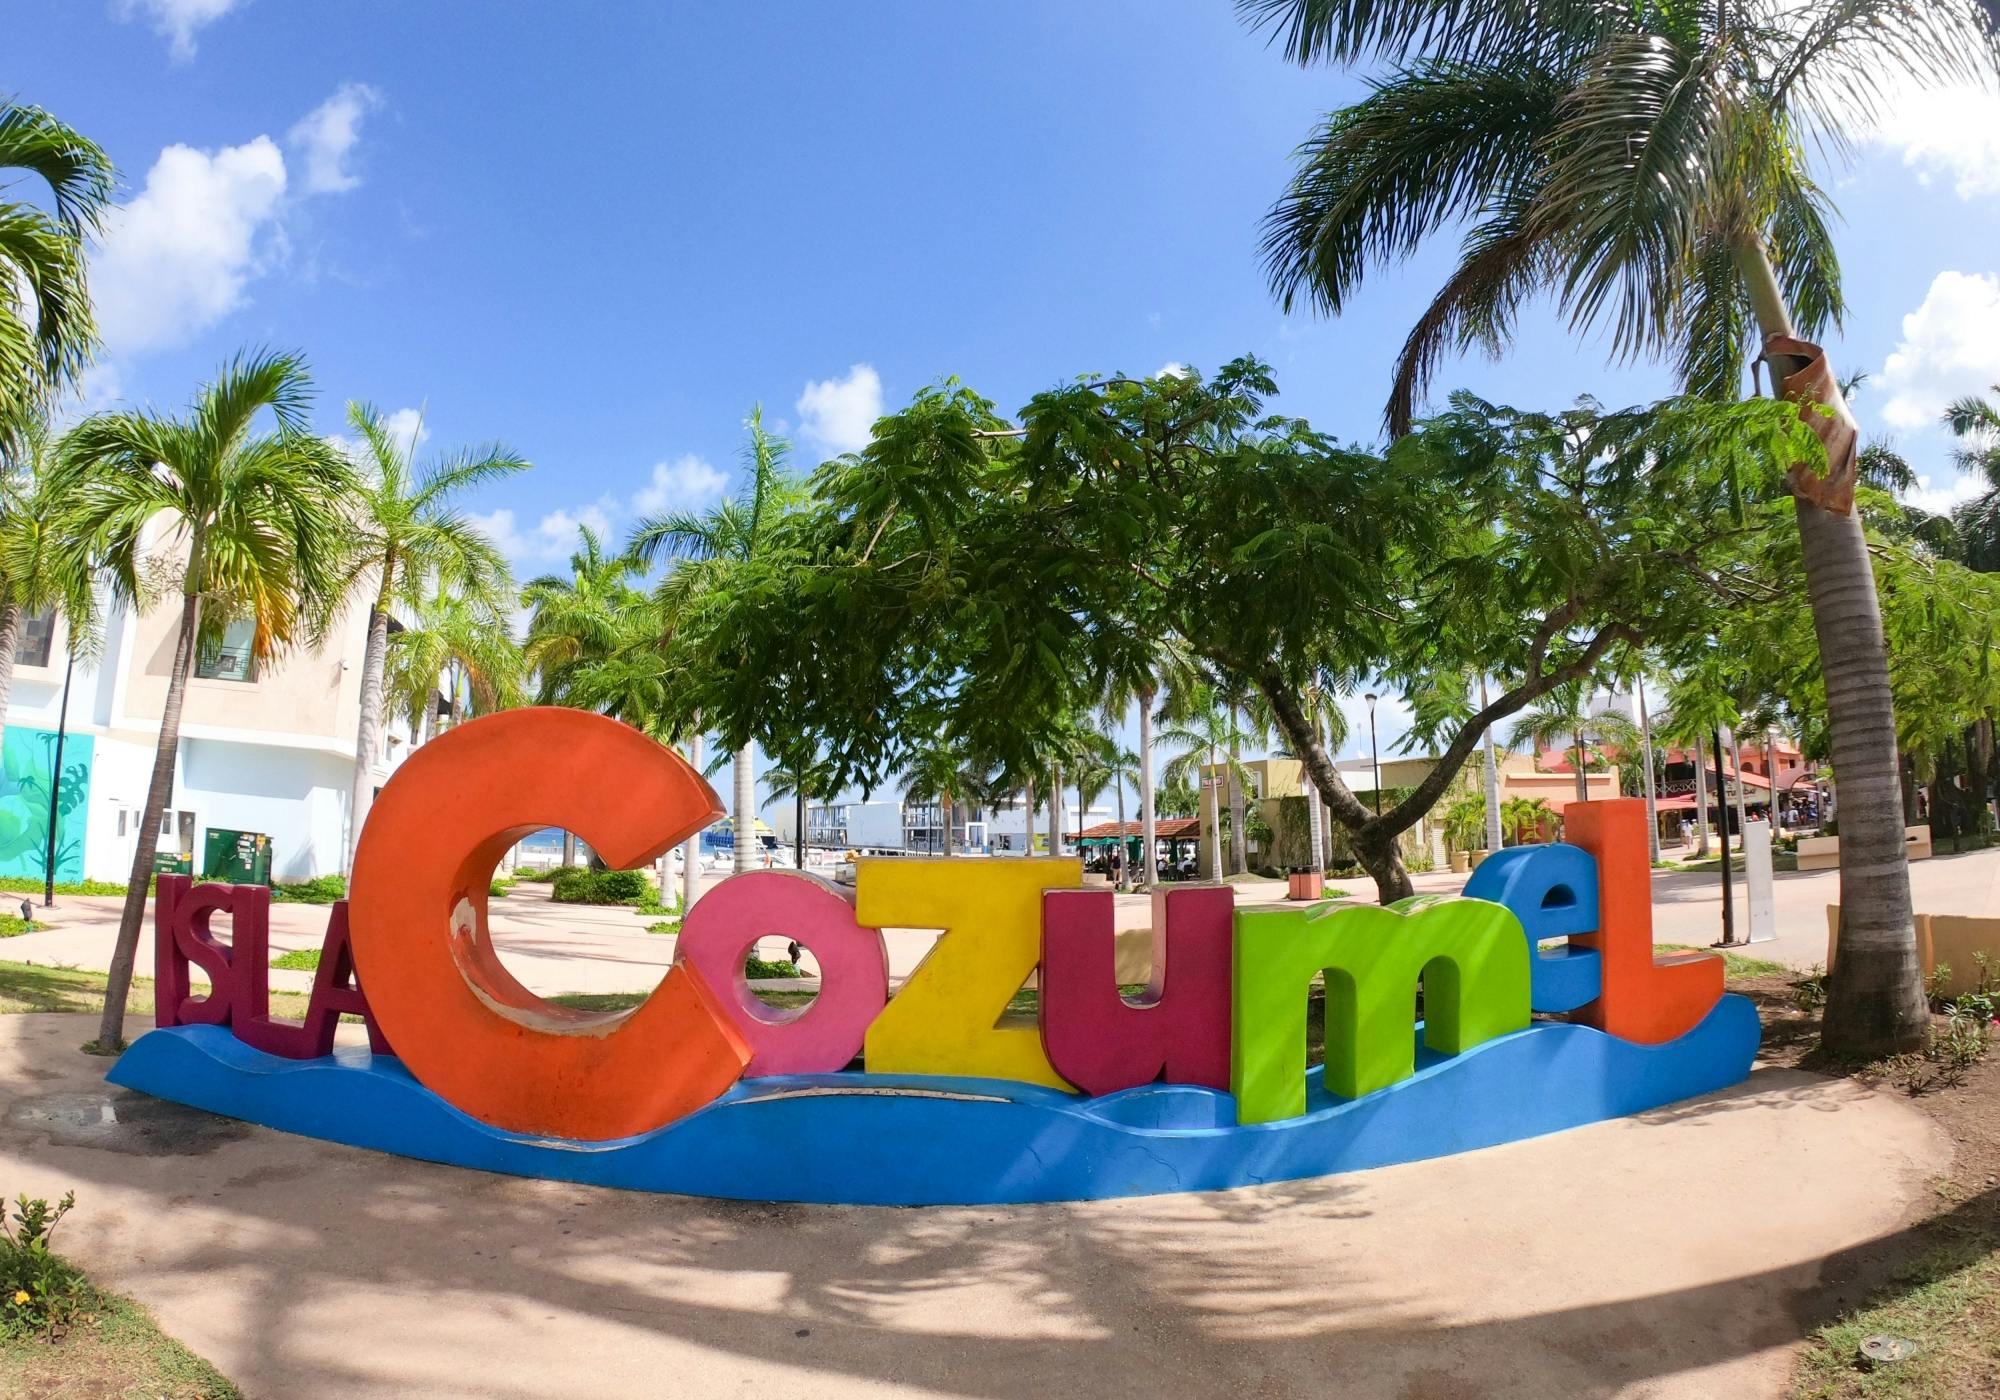 Aventura en la isla de Cozumel desde Cancún y la Riviera Maya